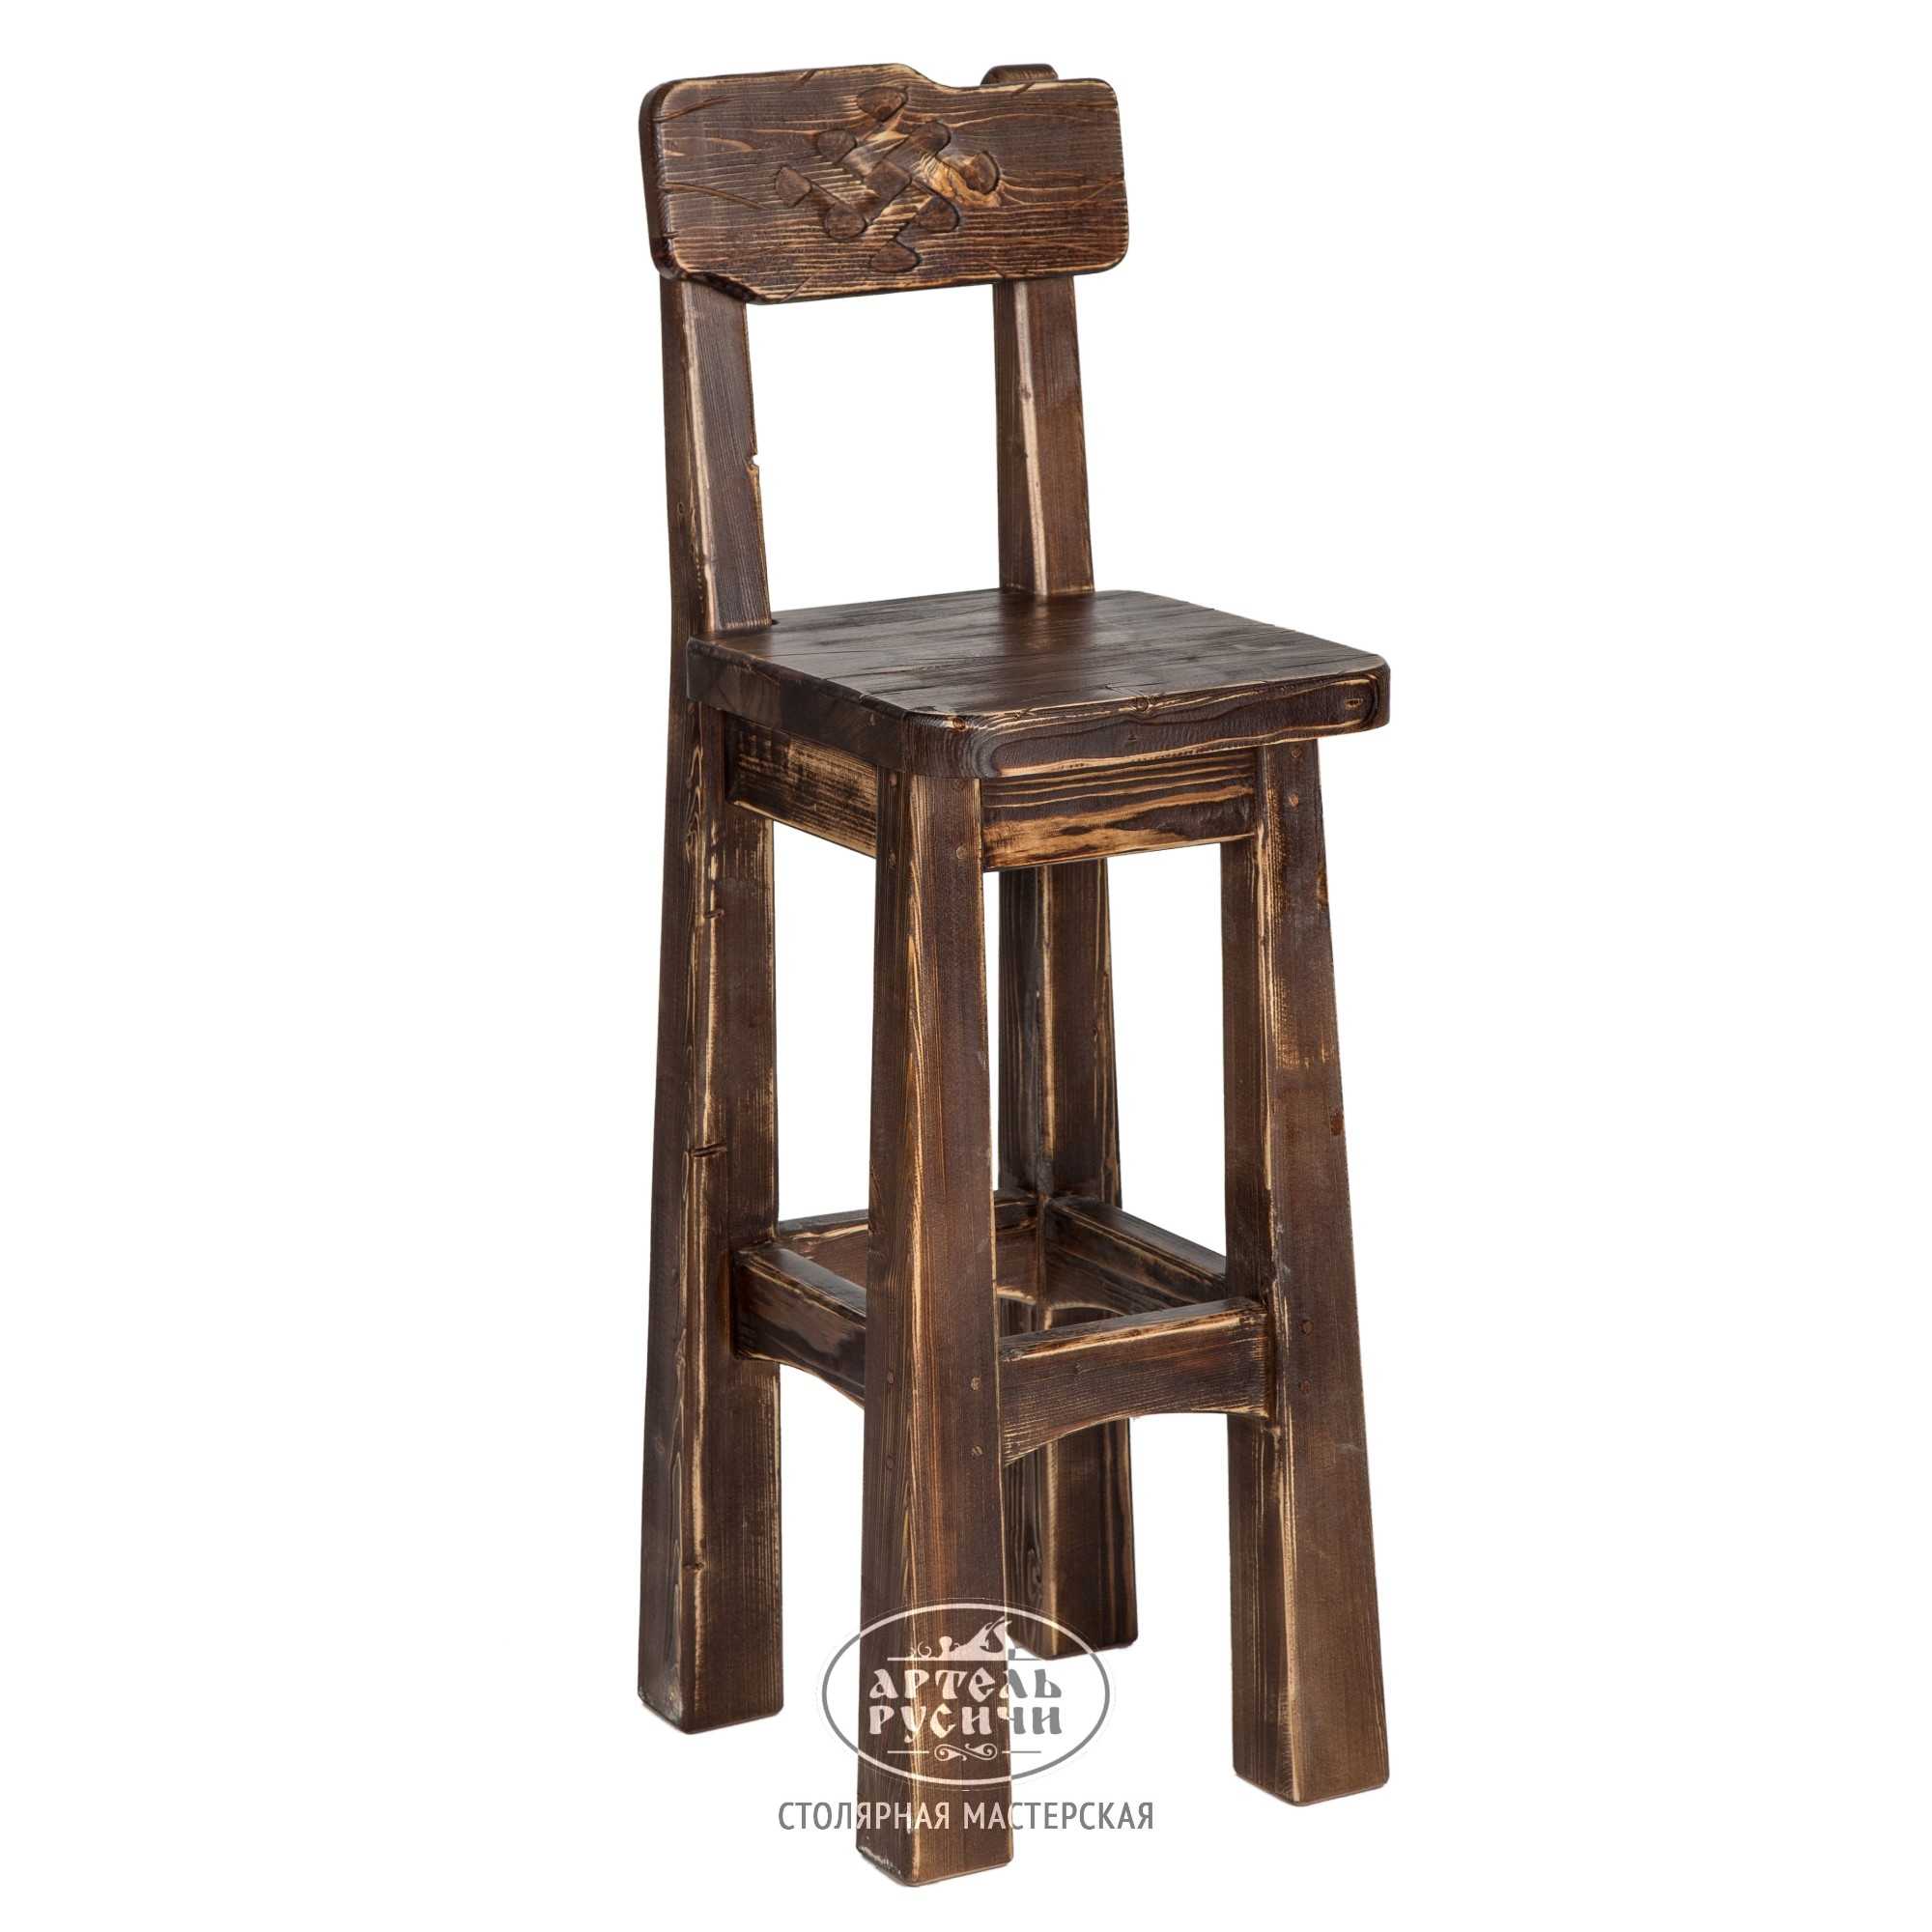 Как просто сделать из дерева барный стул своими руками по предложенному чертежу со стандартными размерами